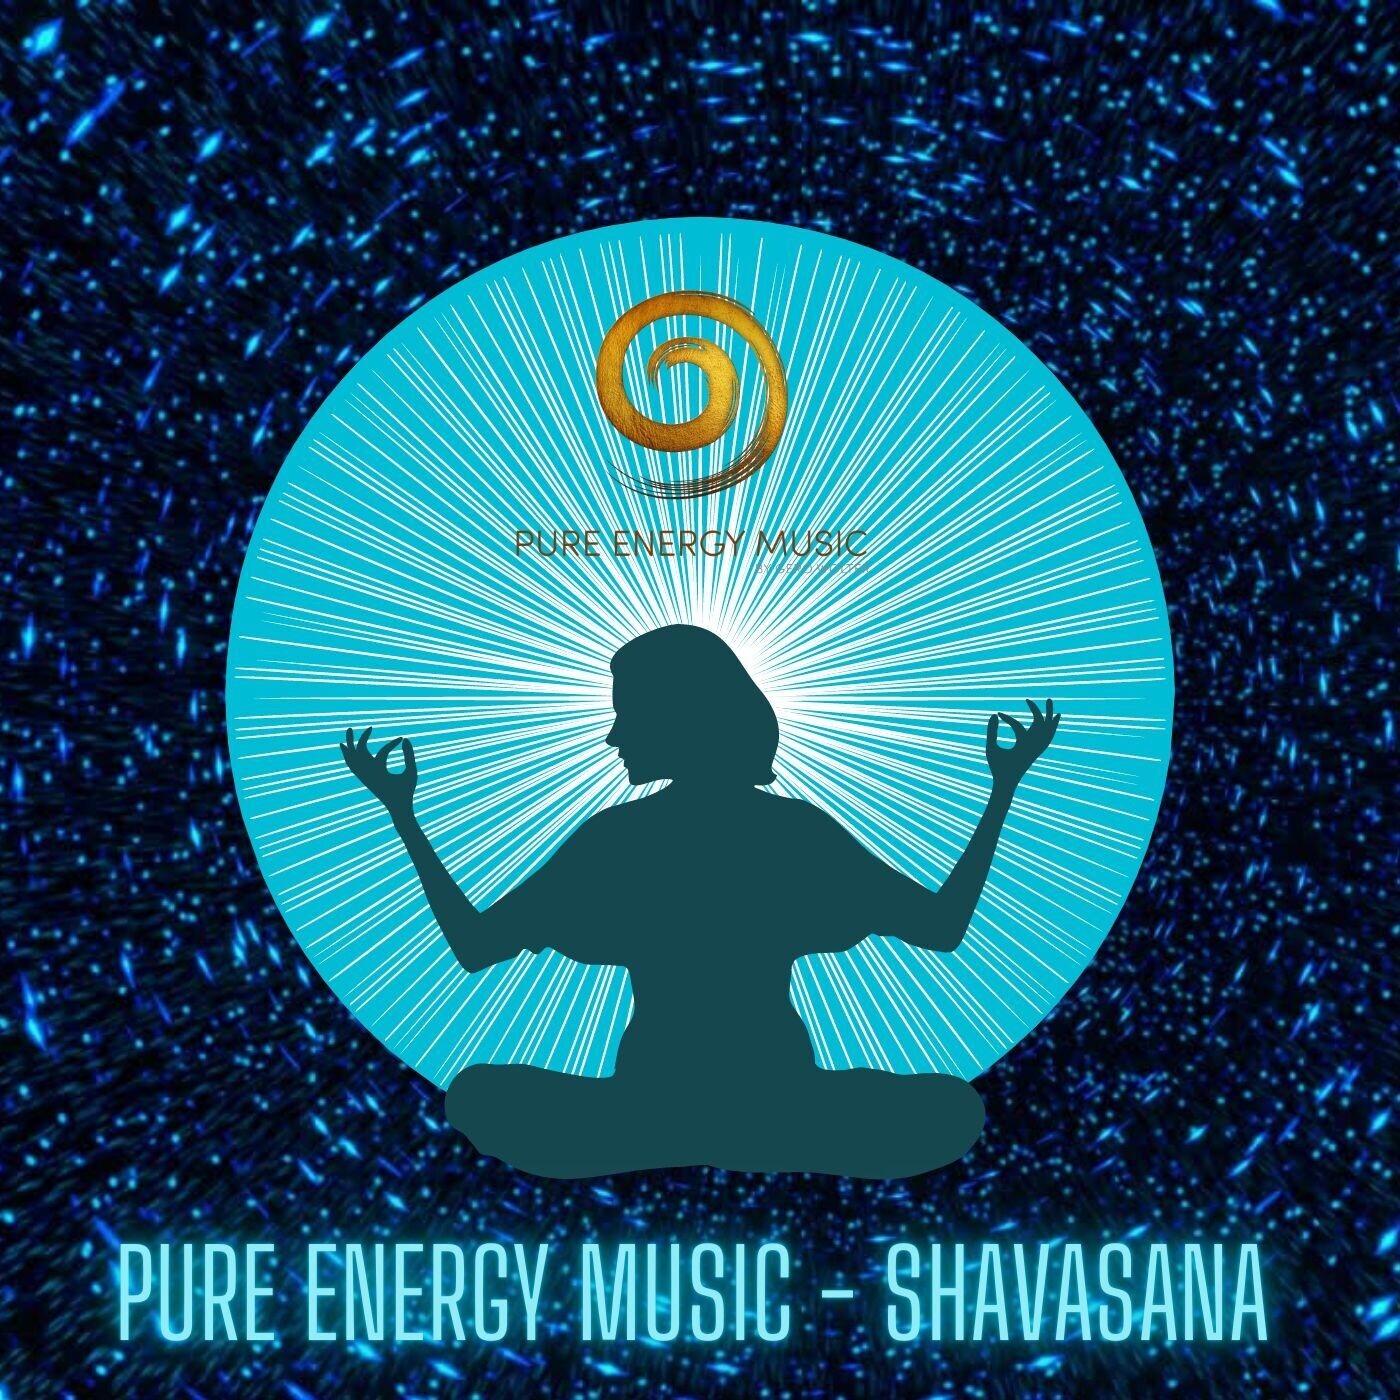 EP "Shavasana" MP3 | nach dem Kauf senden wir dir innerhalb 24 Stunden deinen persönlichen Download Link zu.